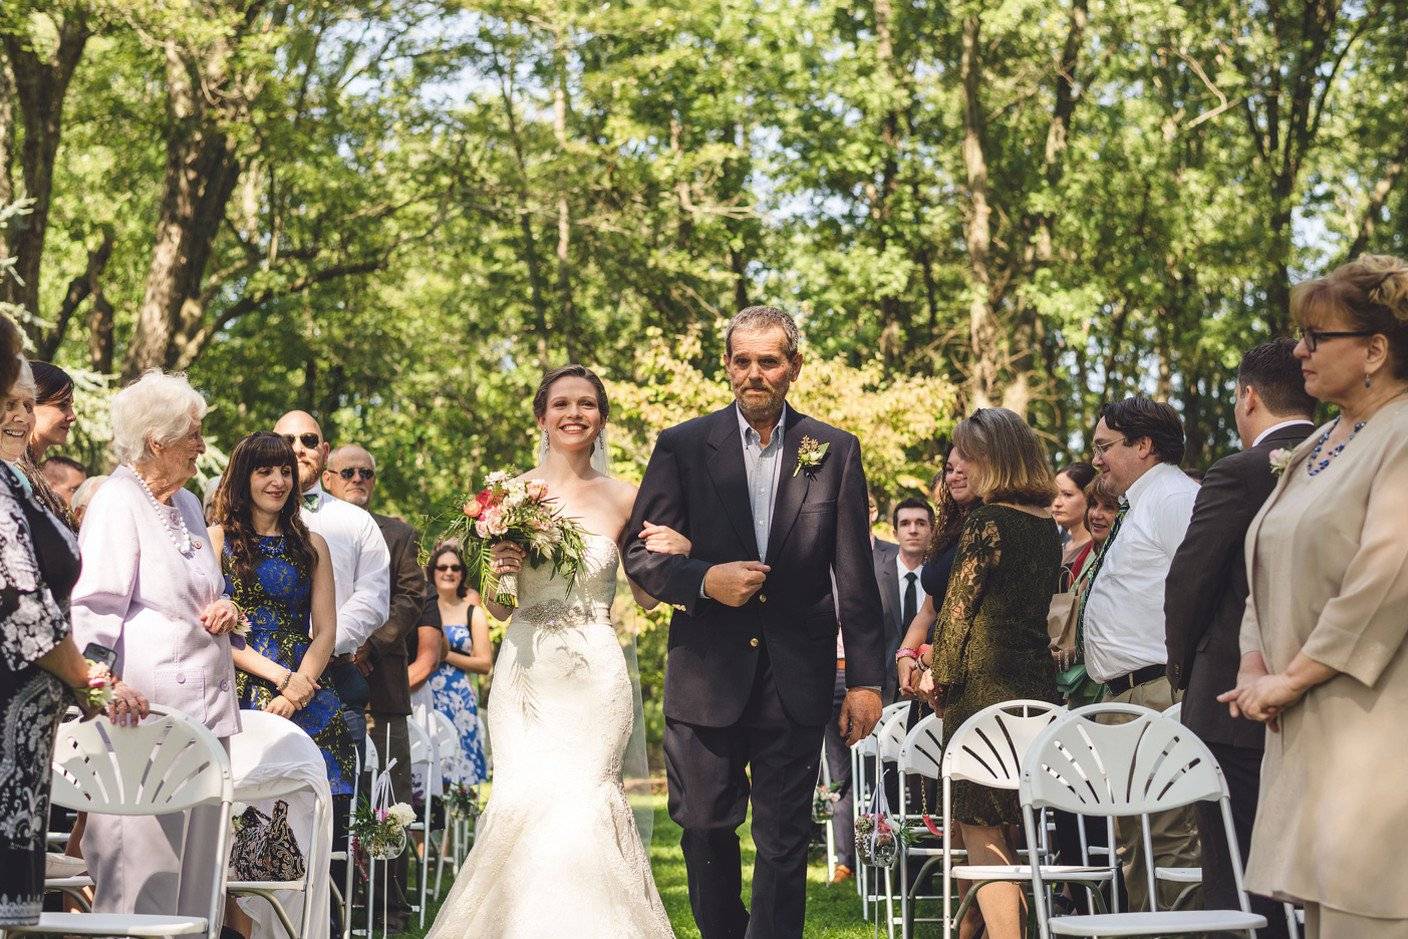 The 10 Best Wedding Venues in East Brunswick, NJ - WeddingWire